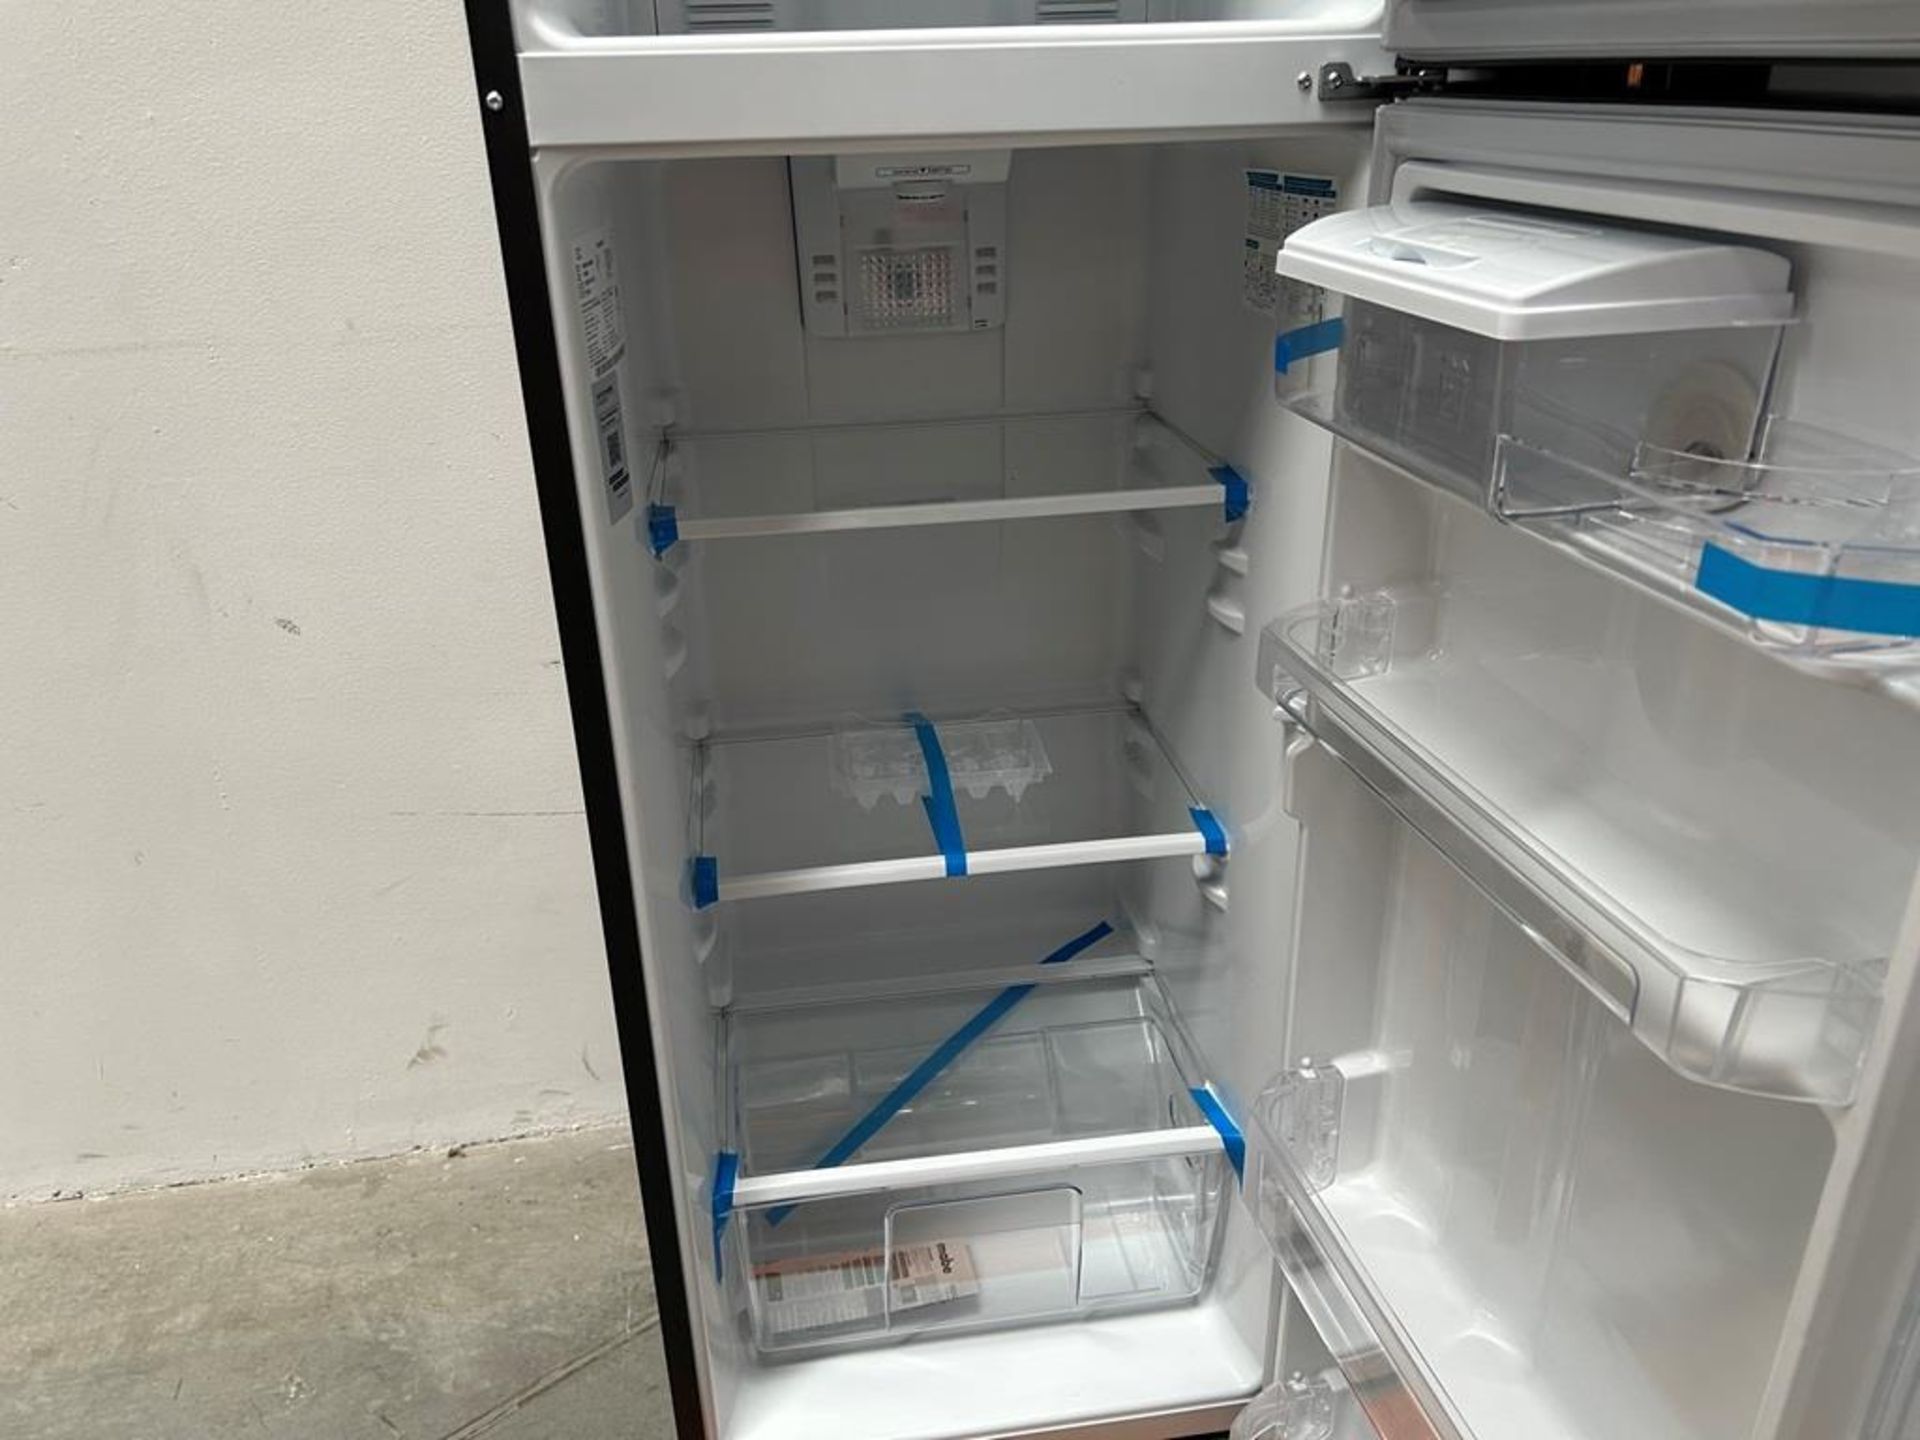 Lote de 2 refrigeradores contiene:1 refrigerador Marca MABE, Modelo RMS400IVMRMA, Serie 03009, Colo - Image 13 of 18